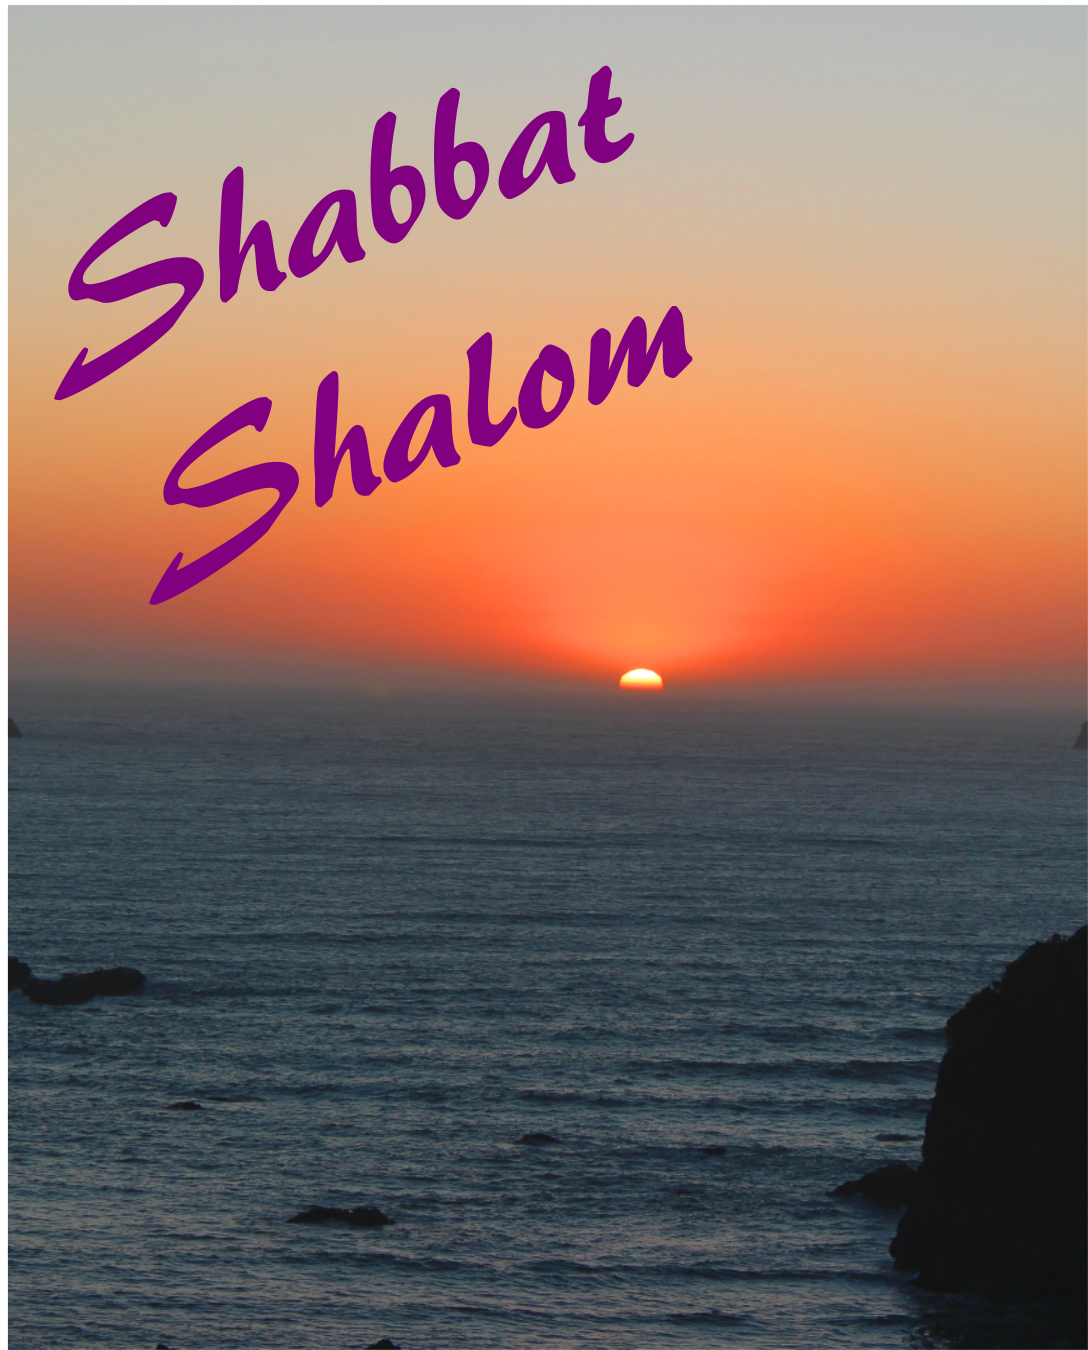 Shabbat Shalom  Shabbat shalom, Shabbat, Shalom